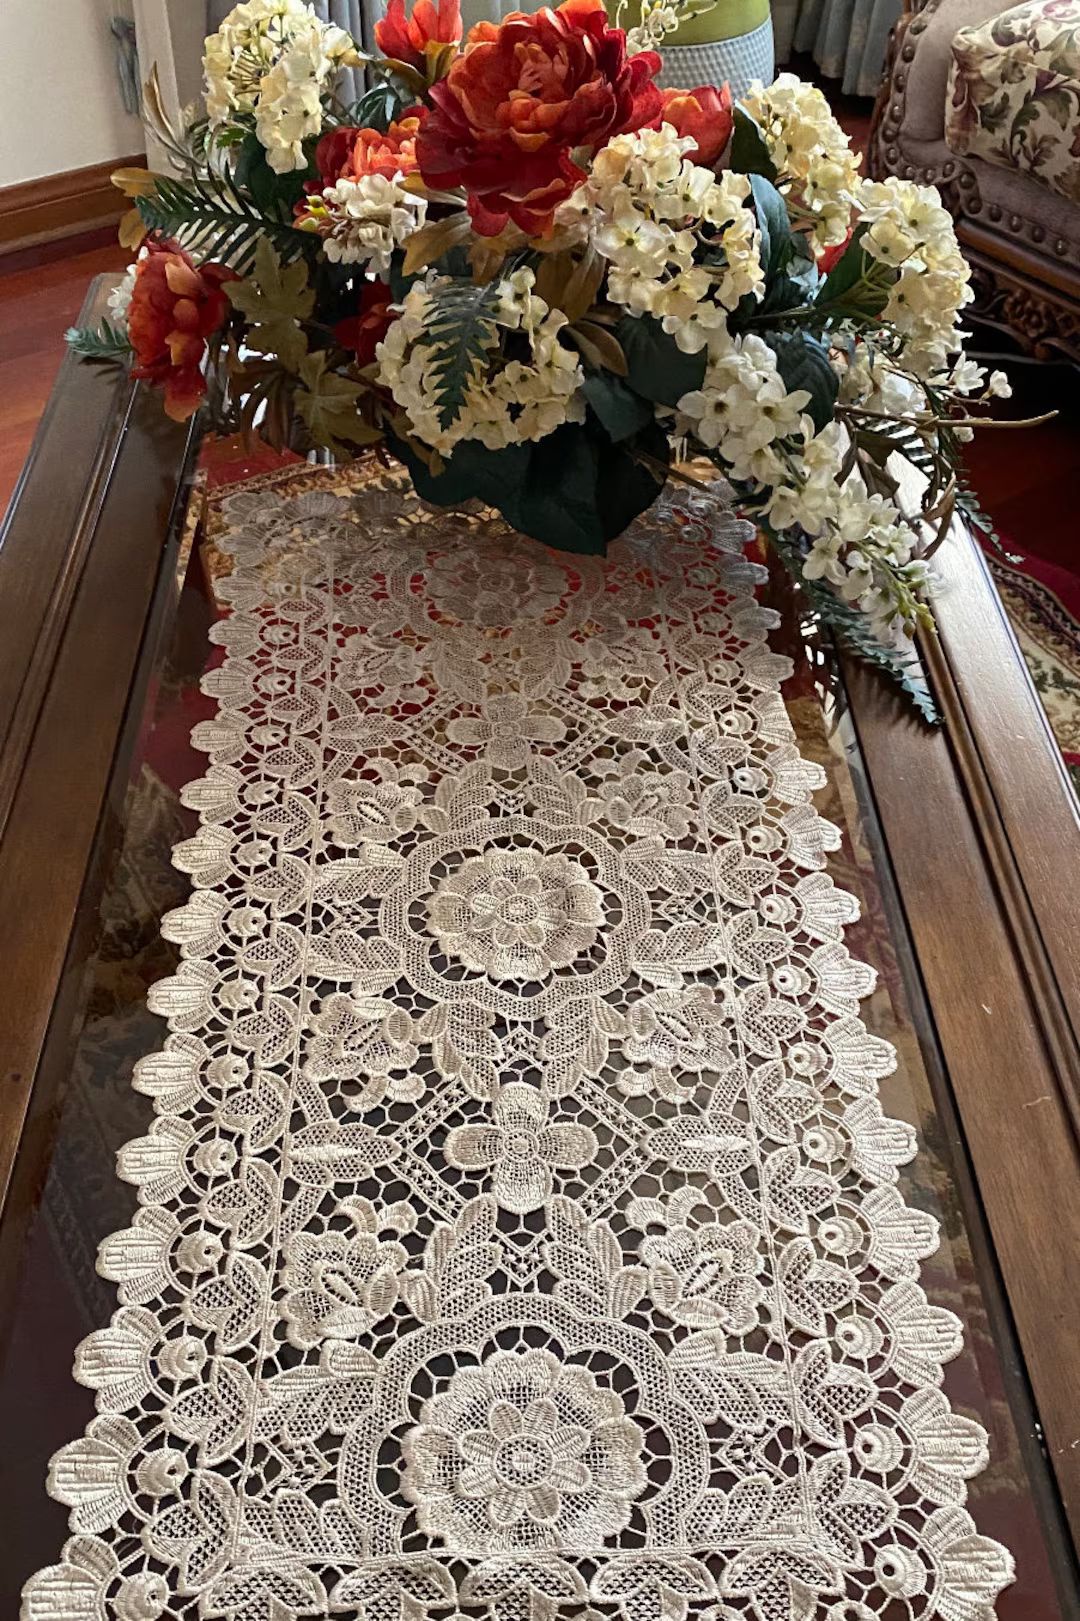 AMT Elegant Vintage Lace Floral Embroidered Linen Table Runner, Dresser Scarf, Place Mat - Beige | Etsy (US)